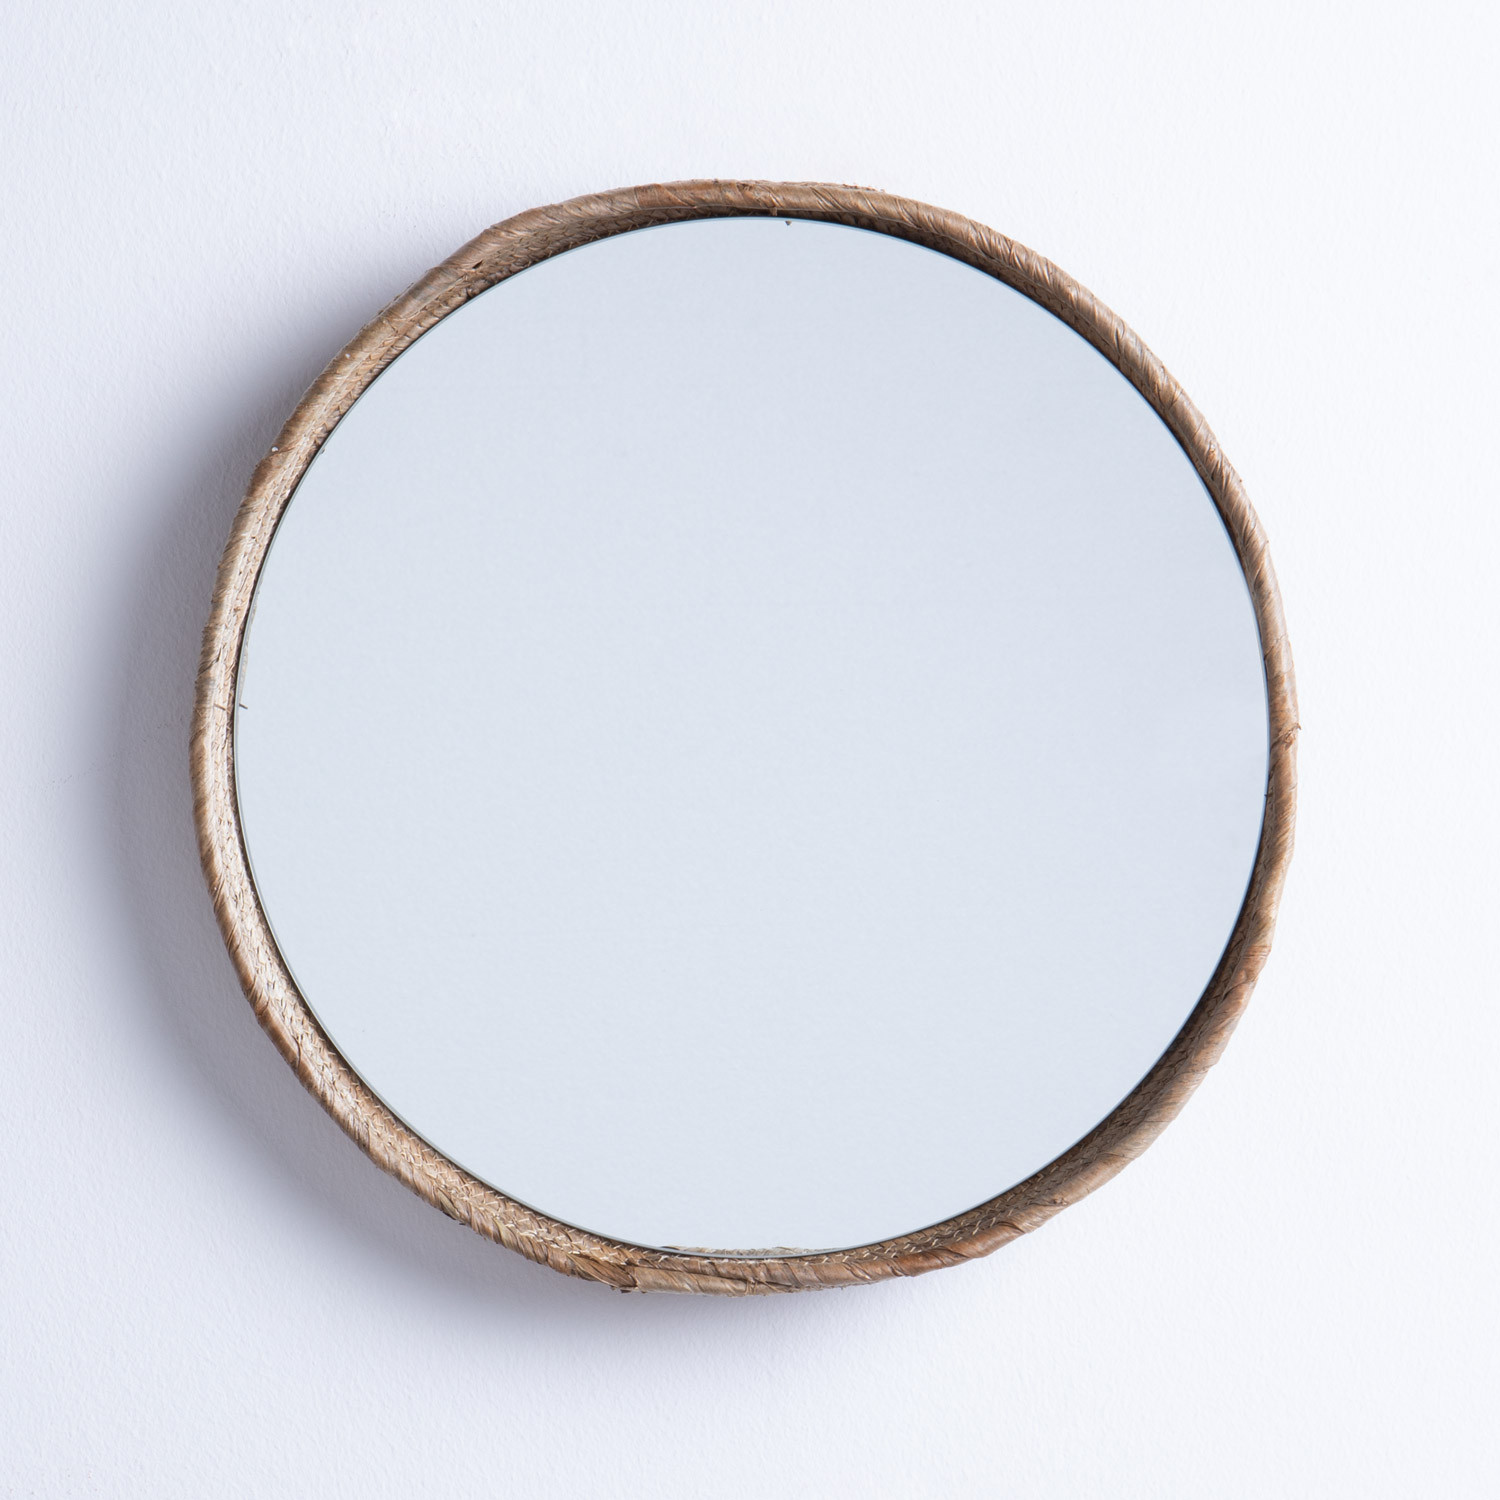 Specchio da Parete Rotondo in Legno (Ø40 cm) Banli, immagine della galleria 1